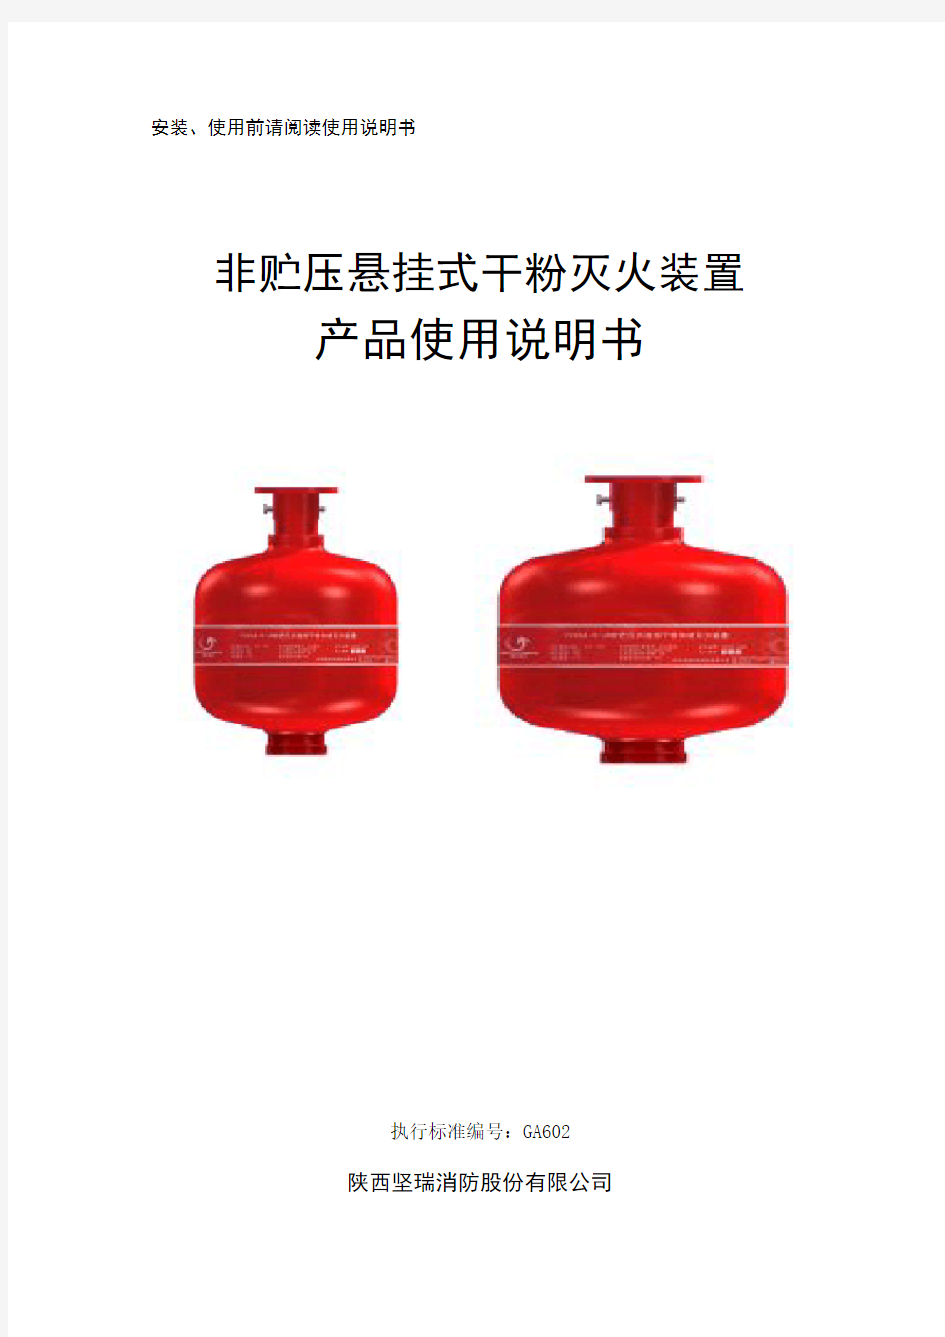 悬挂式超细干粉灭火装置产品设备使用说明-文件版